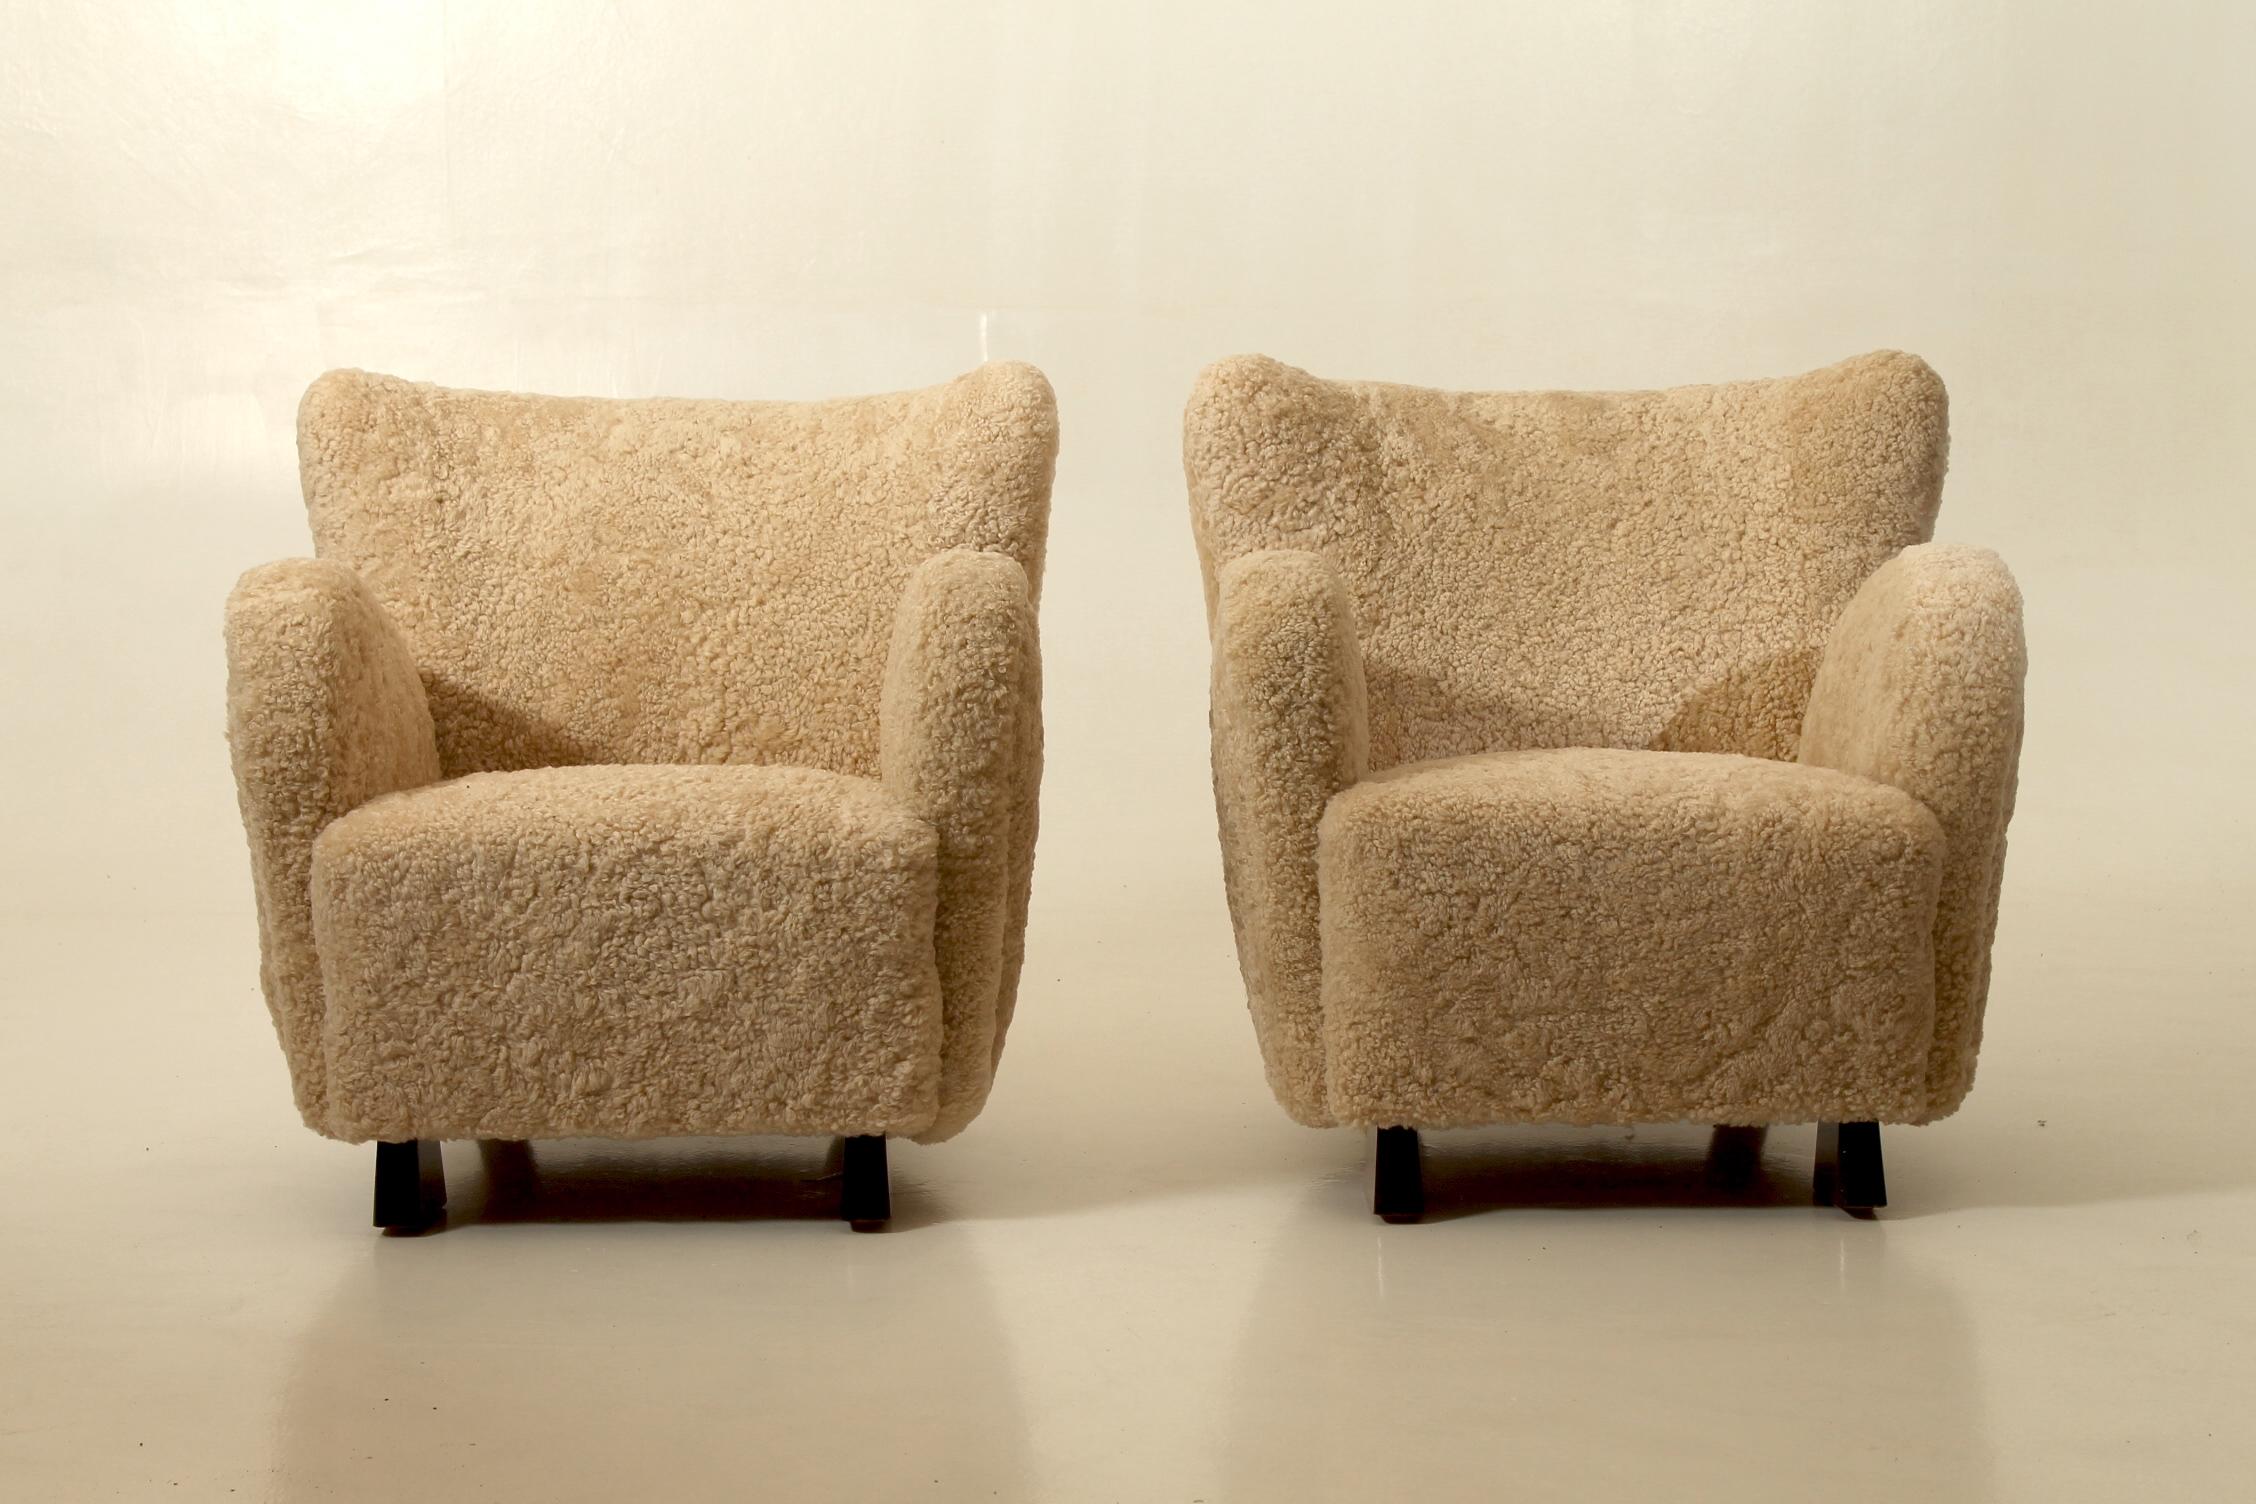 Seltenes Paar Sessel, entworfen von Flemming Lassen. Produziert von der Tischlerei A.J Iversen, Dänemark. Neu gepolstert mit Schafsleder. Entworfen und hergestellt in den 1940er Jahren, Dänemark.